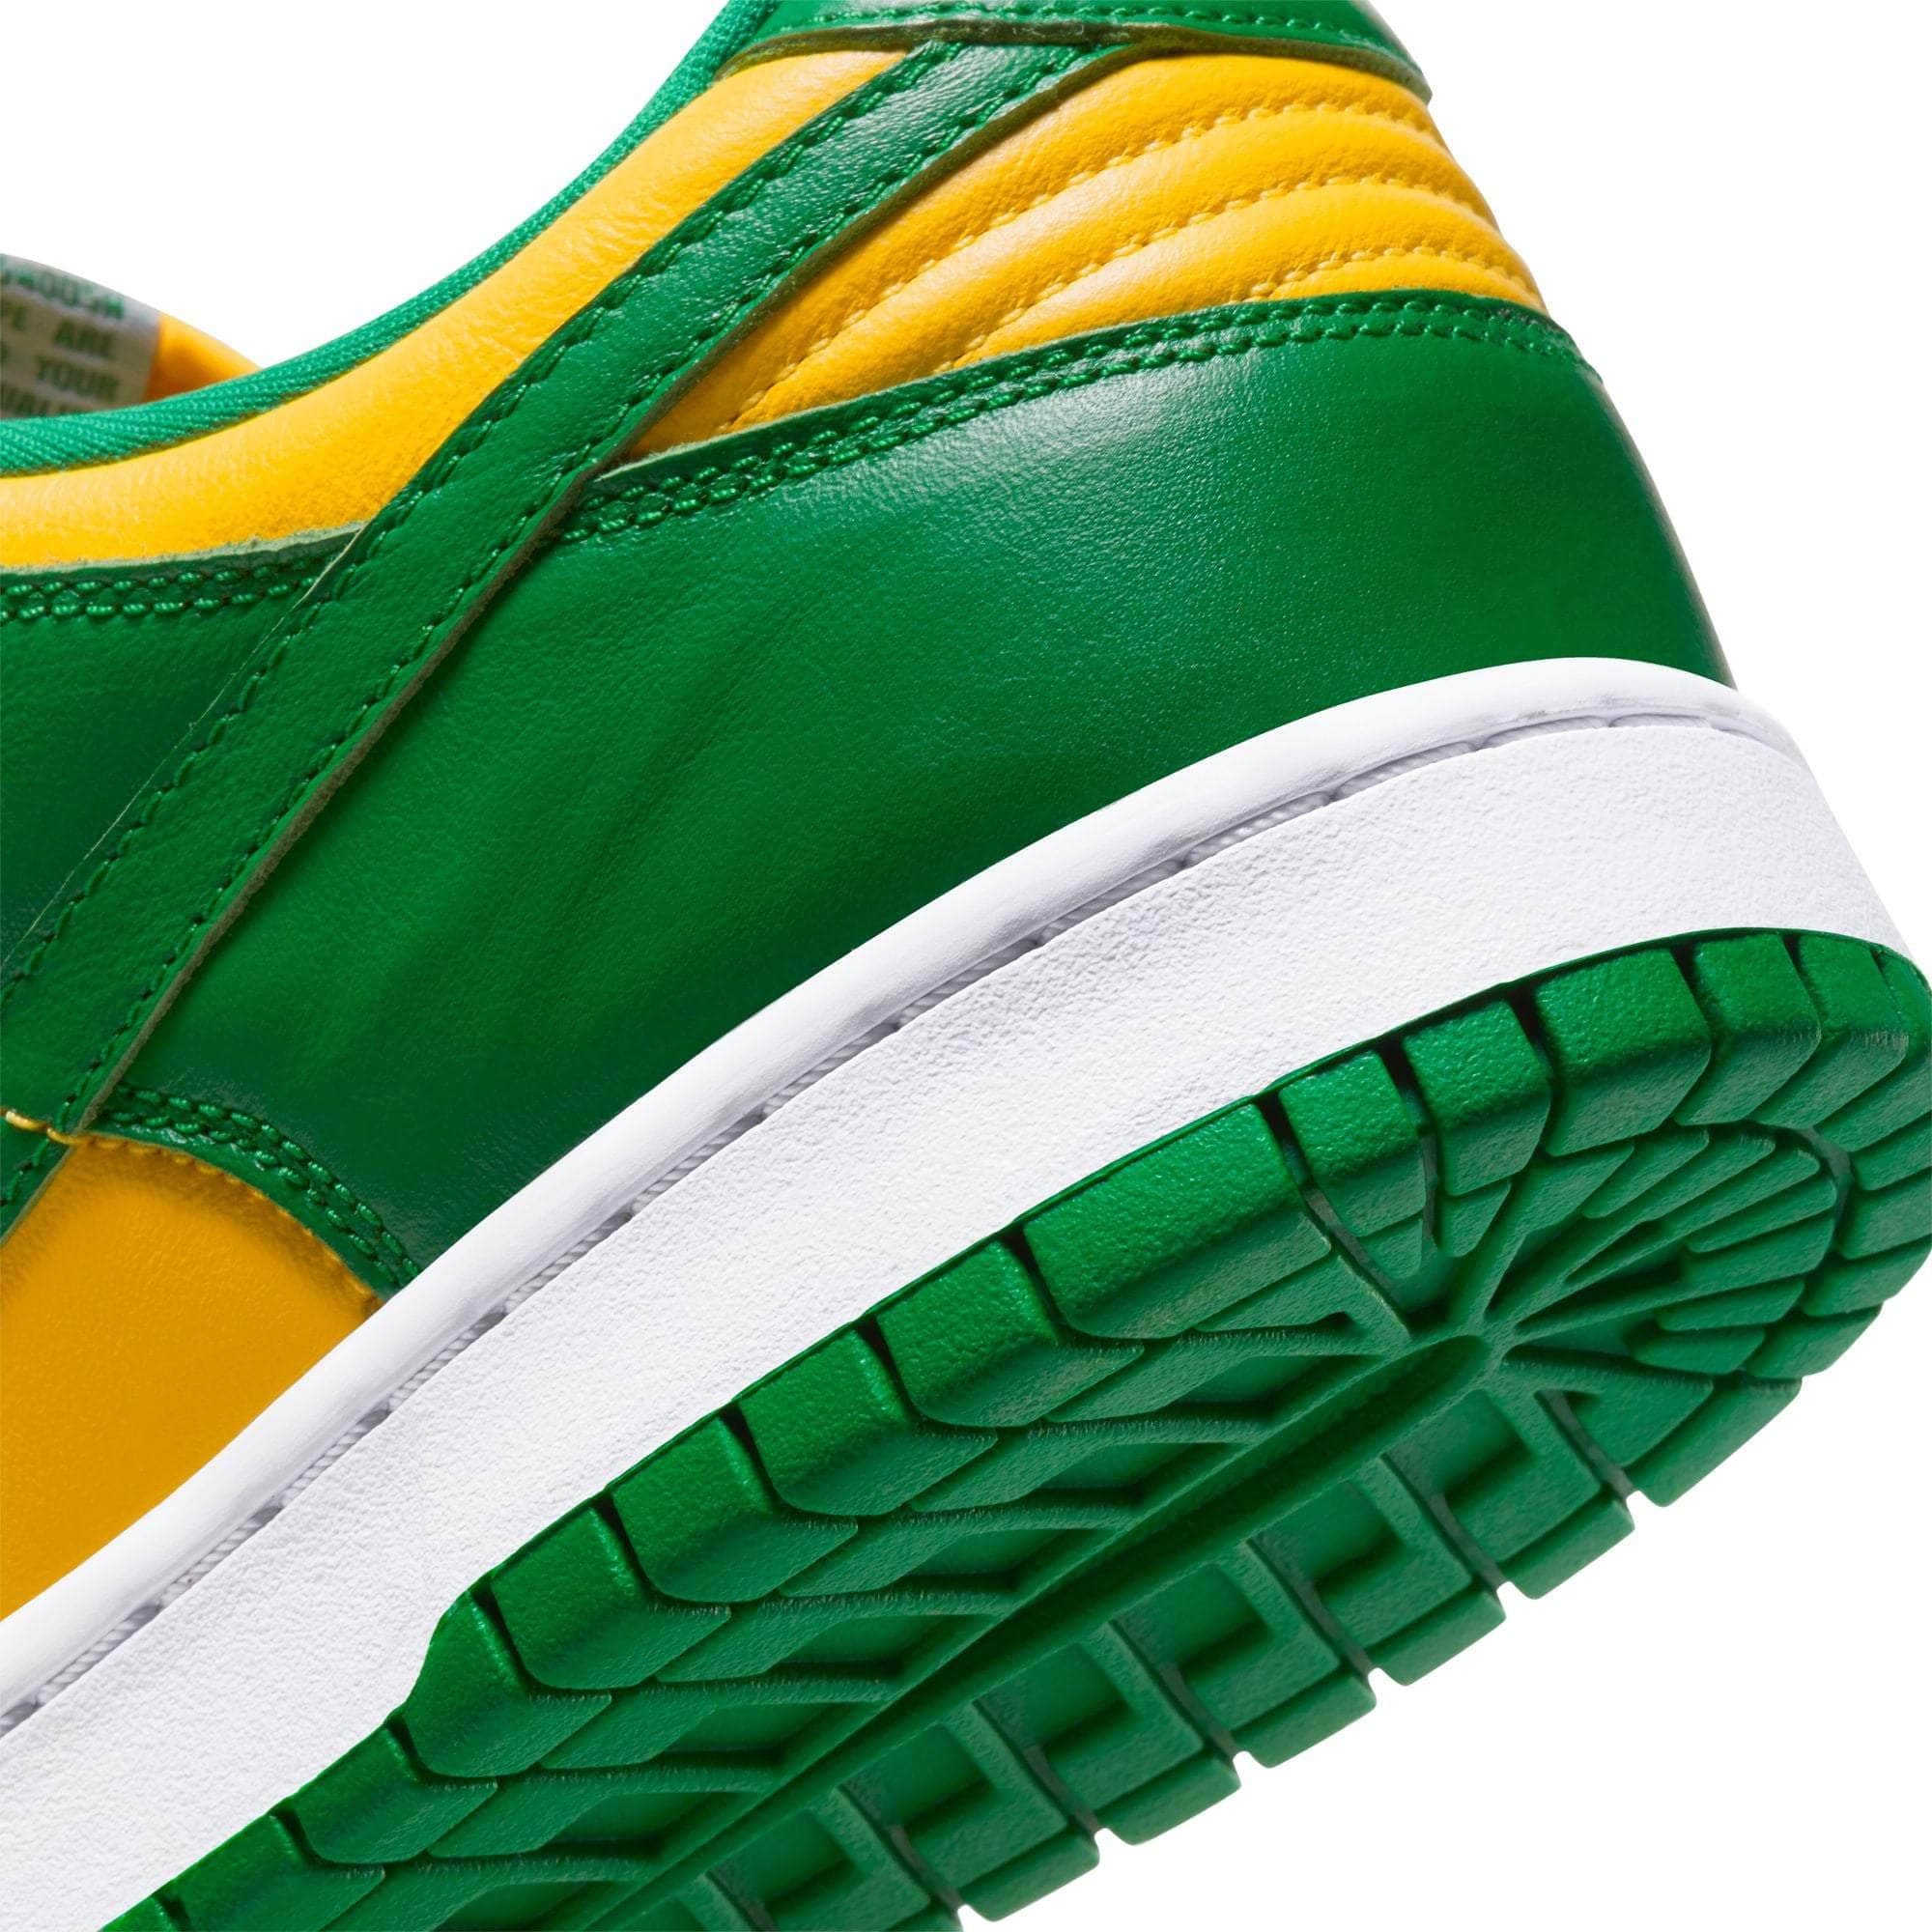 Nike FOOTWEAR Nike Dunk Low "Brazil" - Men's